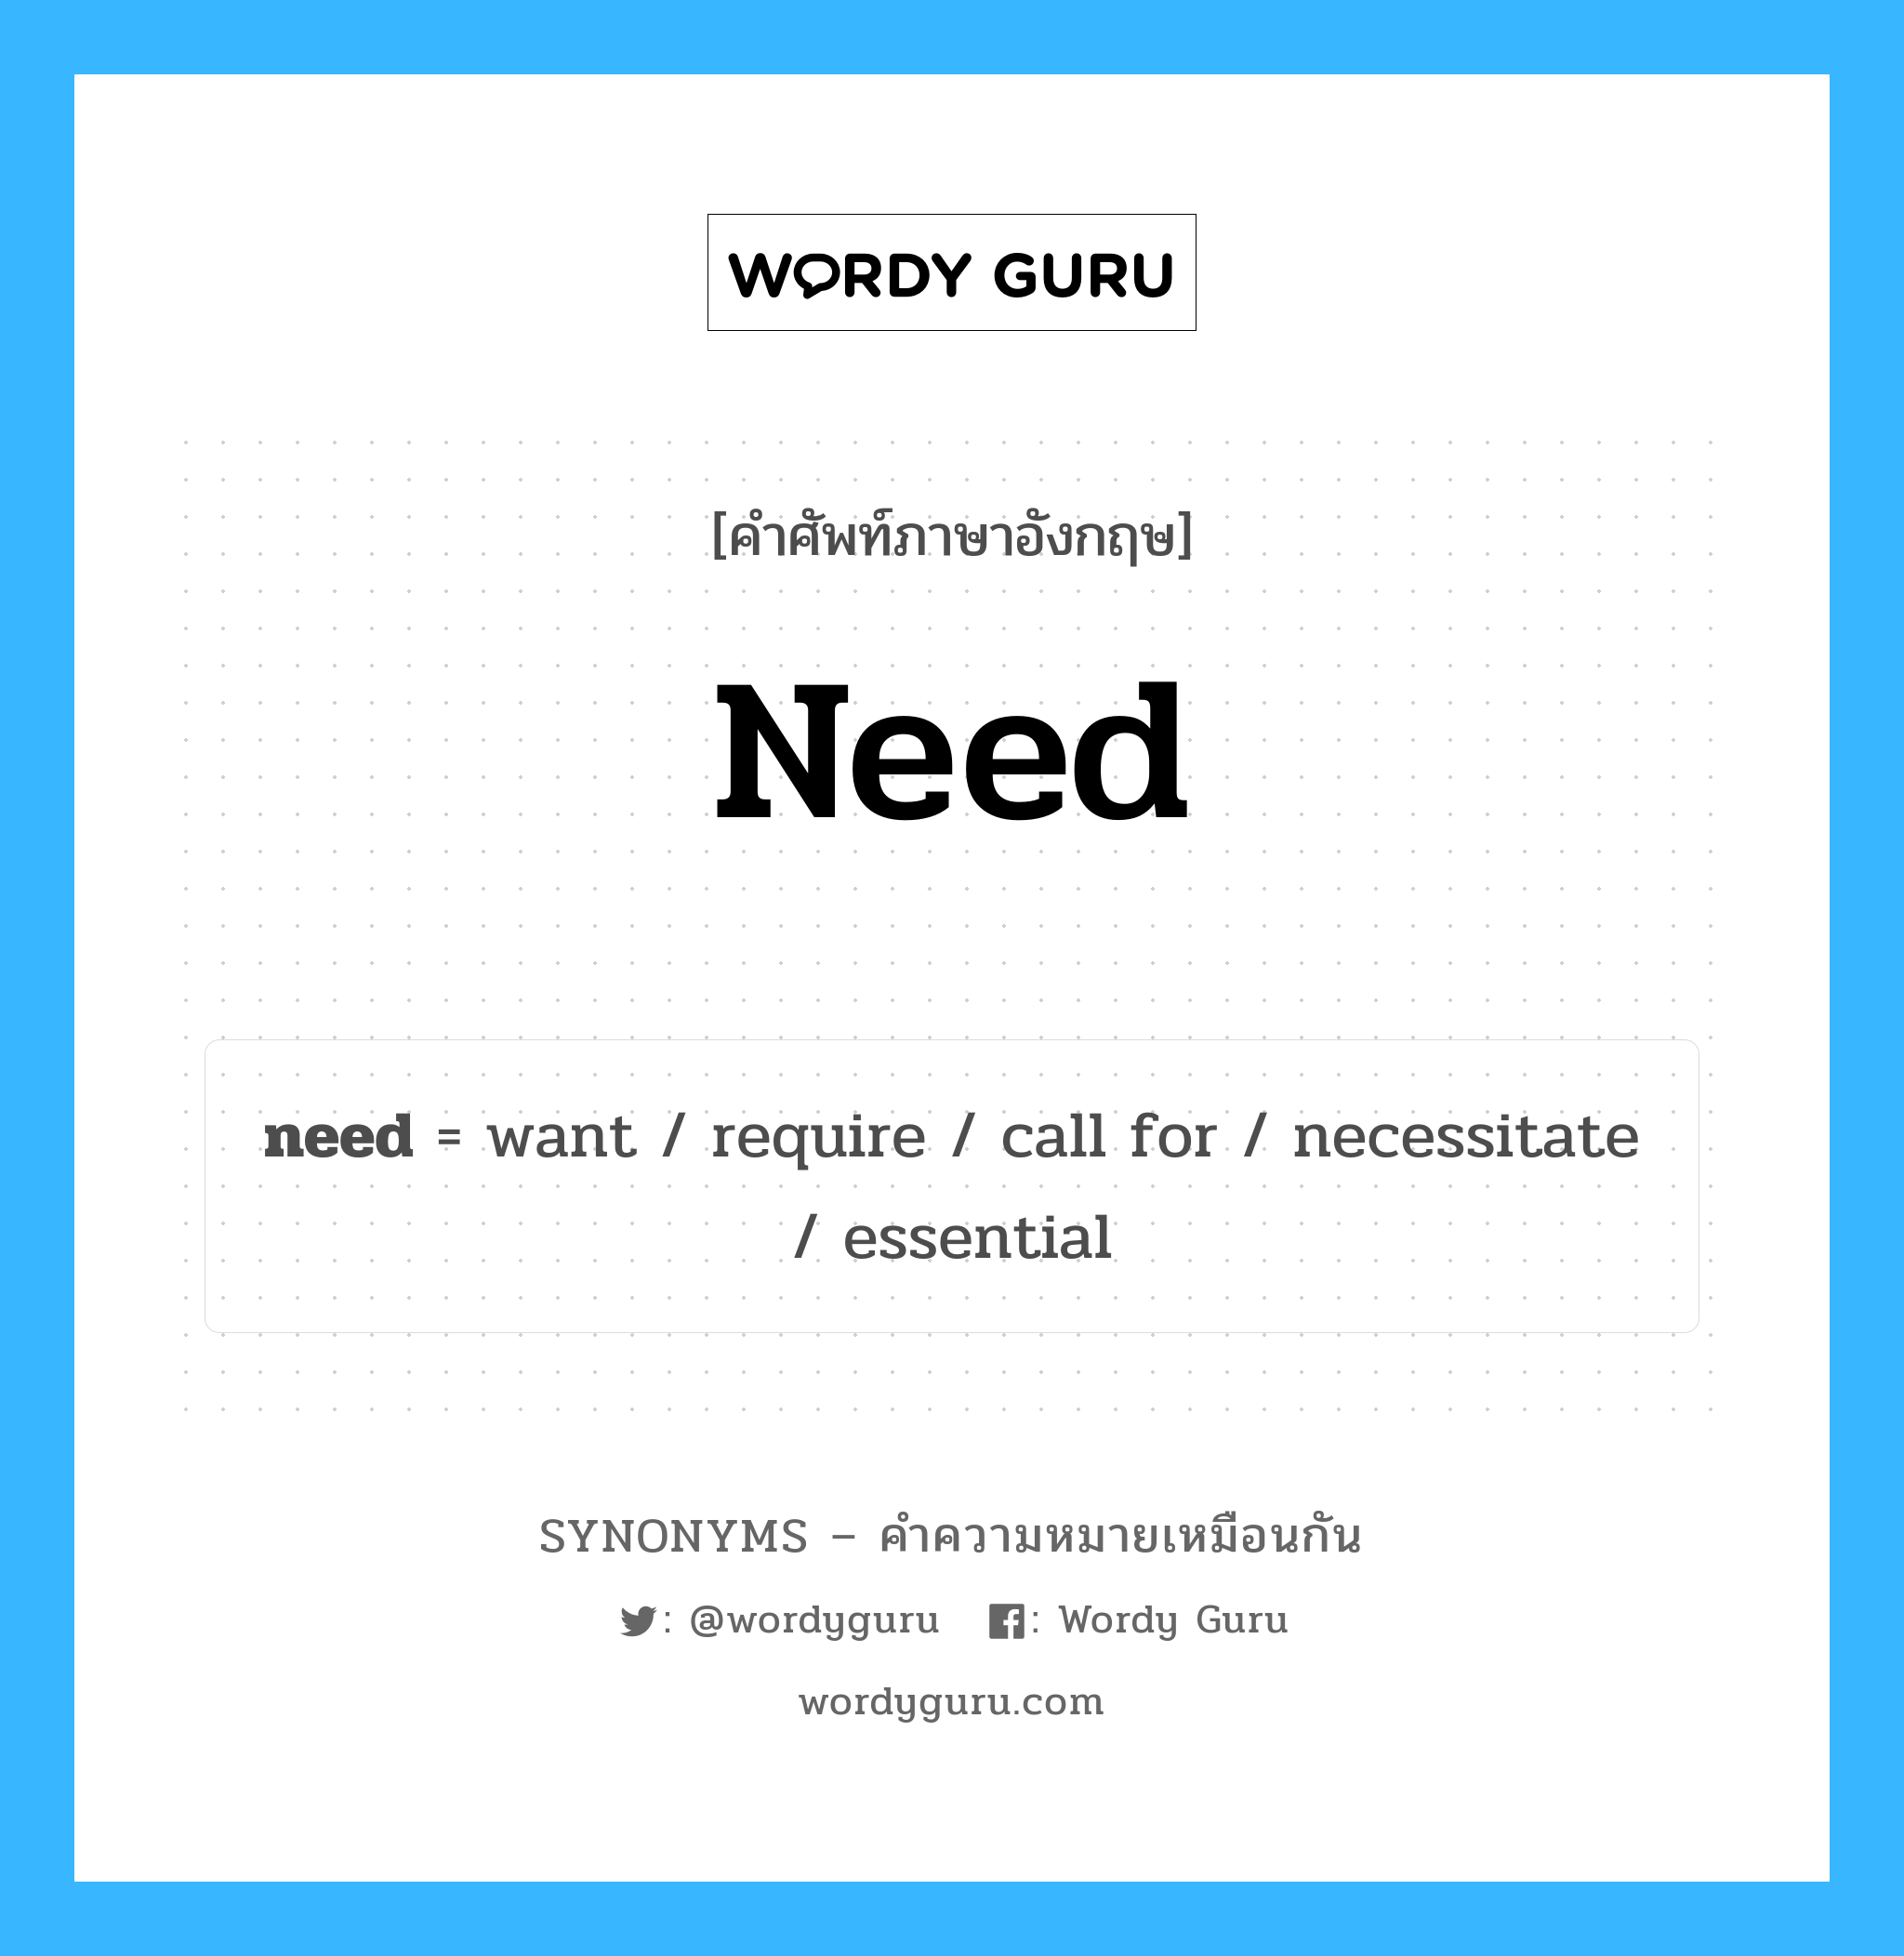 want เป็นหนึ่งใน need และมีคำอื่น ๆ อีกดังนี้, คำศัพท์ภาษาอังกฤษ want ความหมายคล้ายกันกับ need แปลว่า ต้อง หมวด need